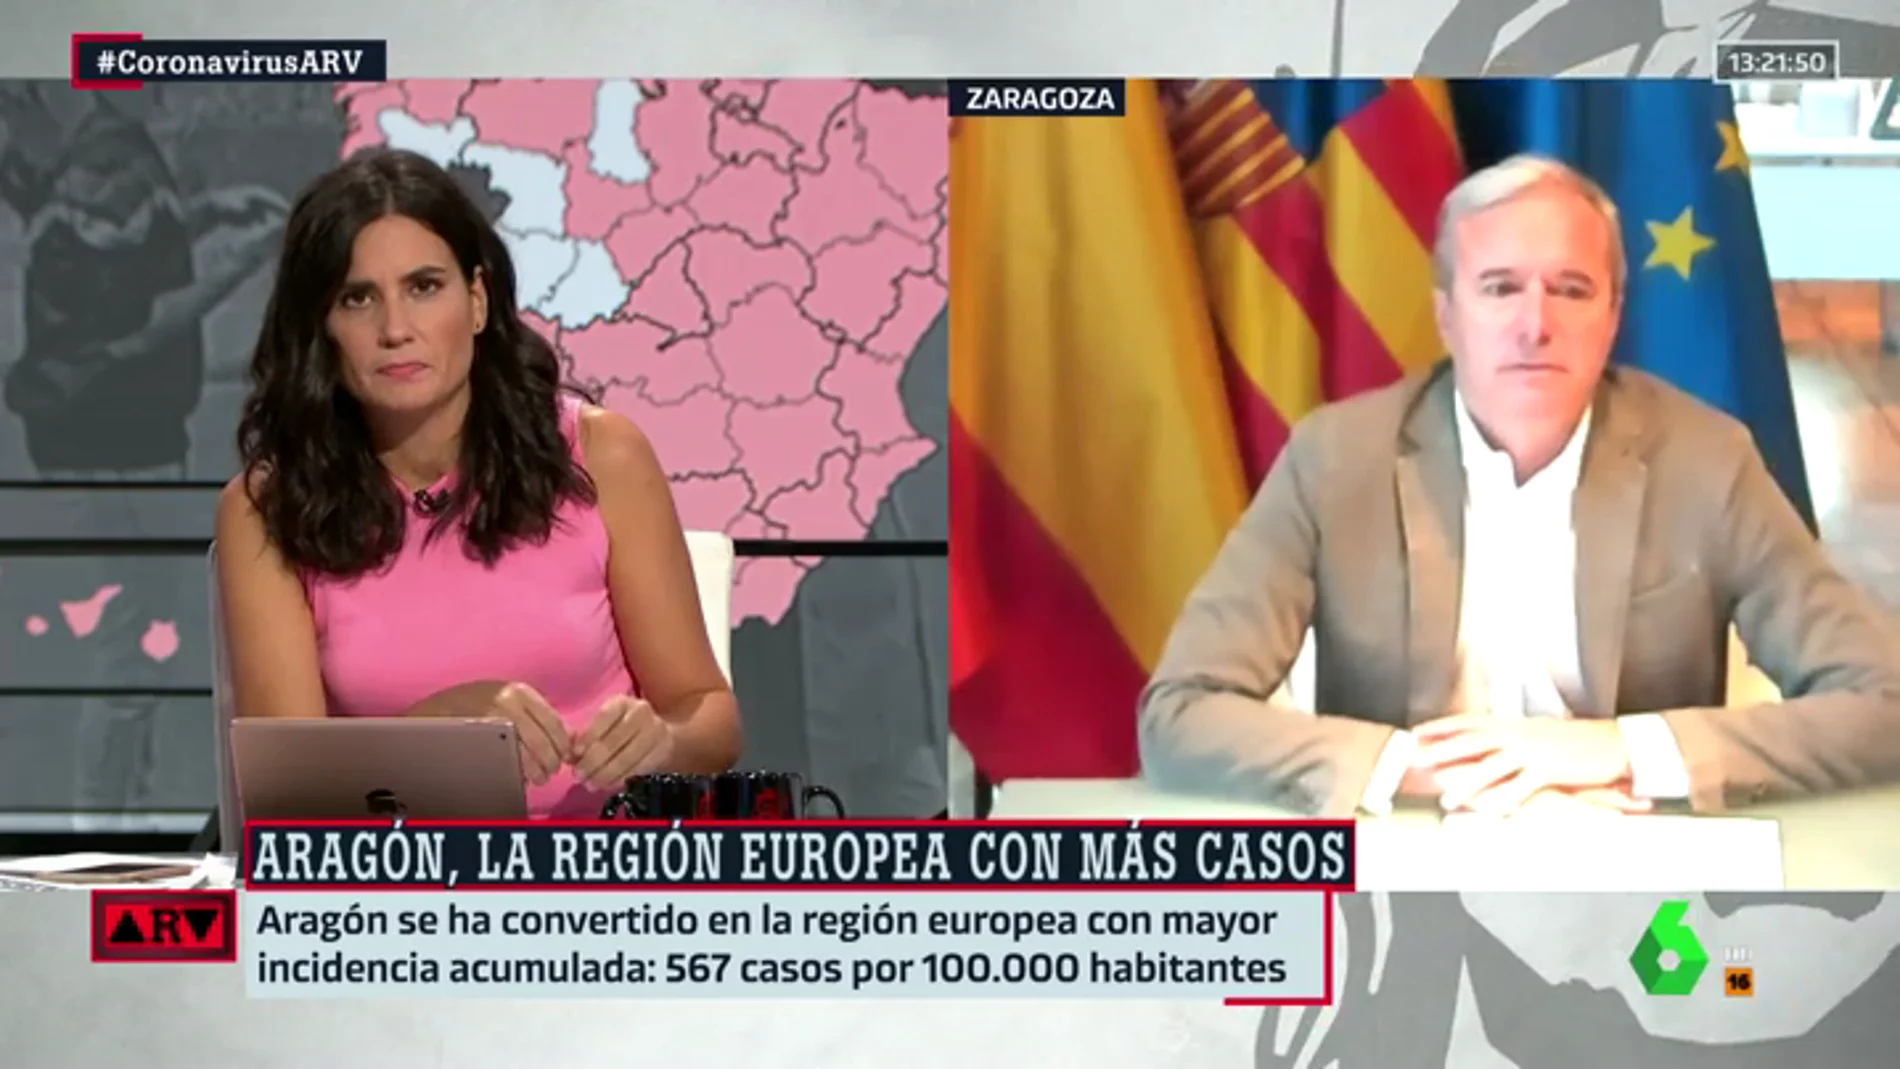 El alcalde de Zaragoza reclama más medios ante el aumento de los contagios: "La preocupación es máxima"